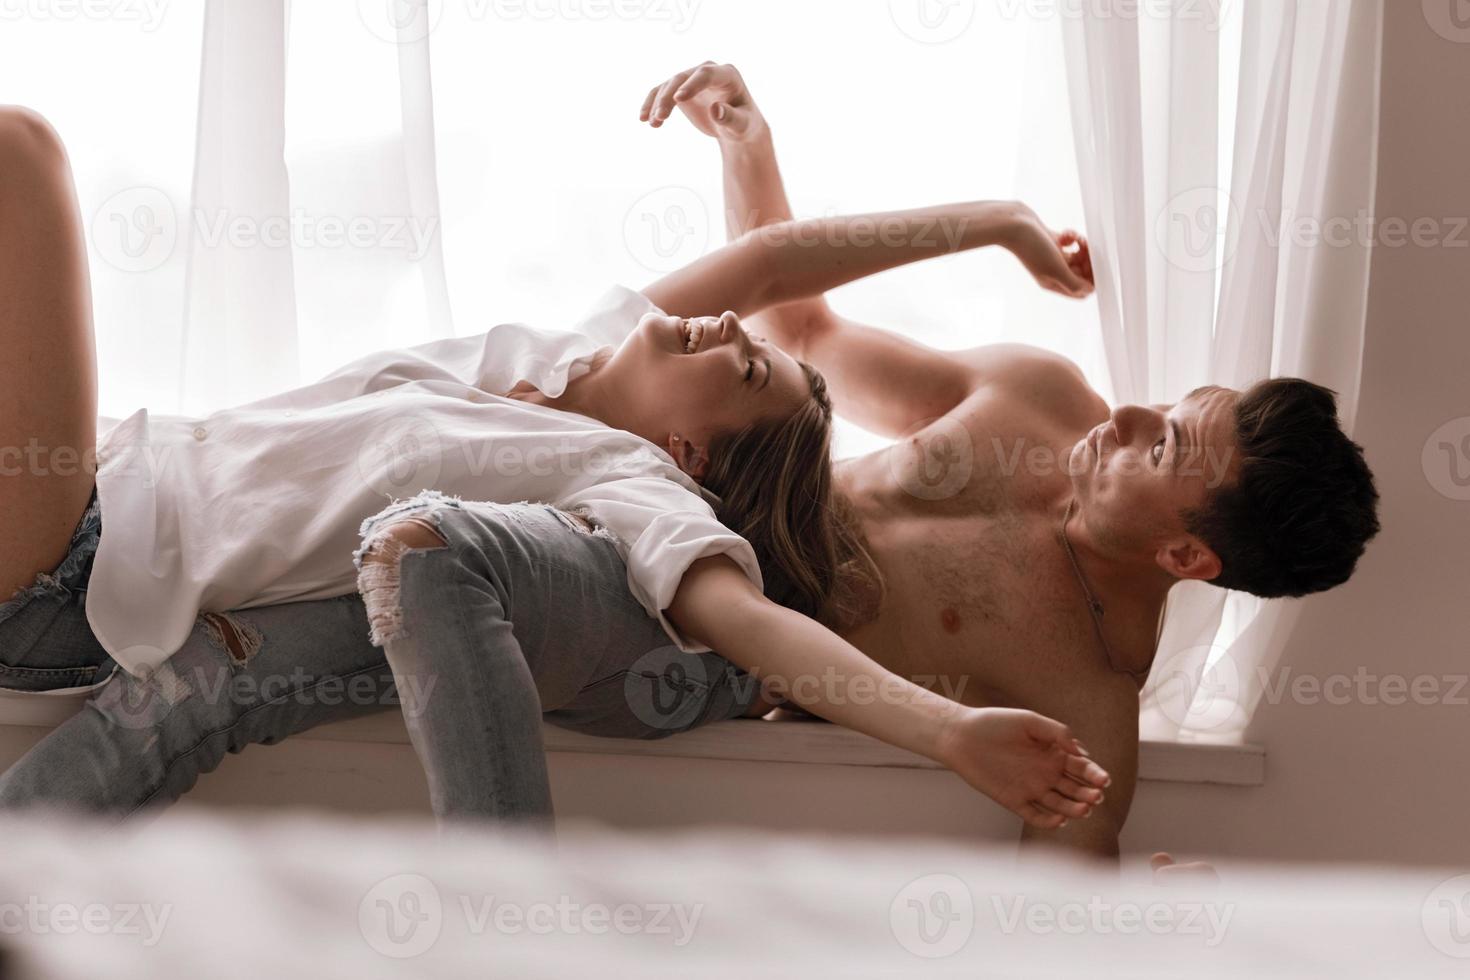 Liebespaar, das zu Hause Spaß hat, verspielte Frau, die lächelndes Ehemannohr beißt, Huckepack, Mann und Frau spielen kindisch im Bett und genießen lustige intime Momente foto